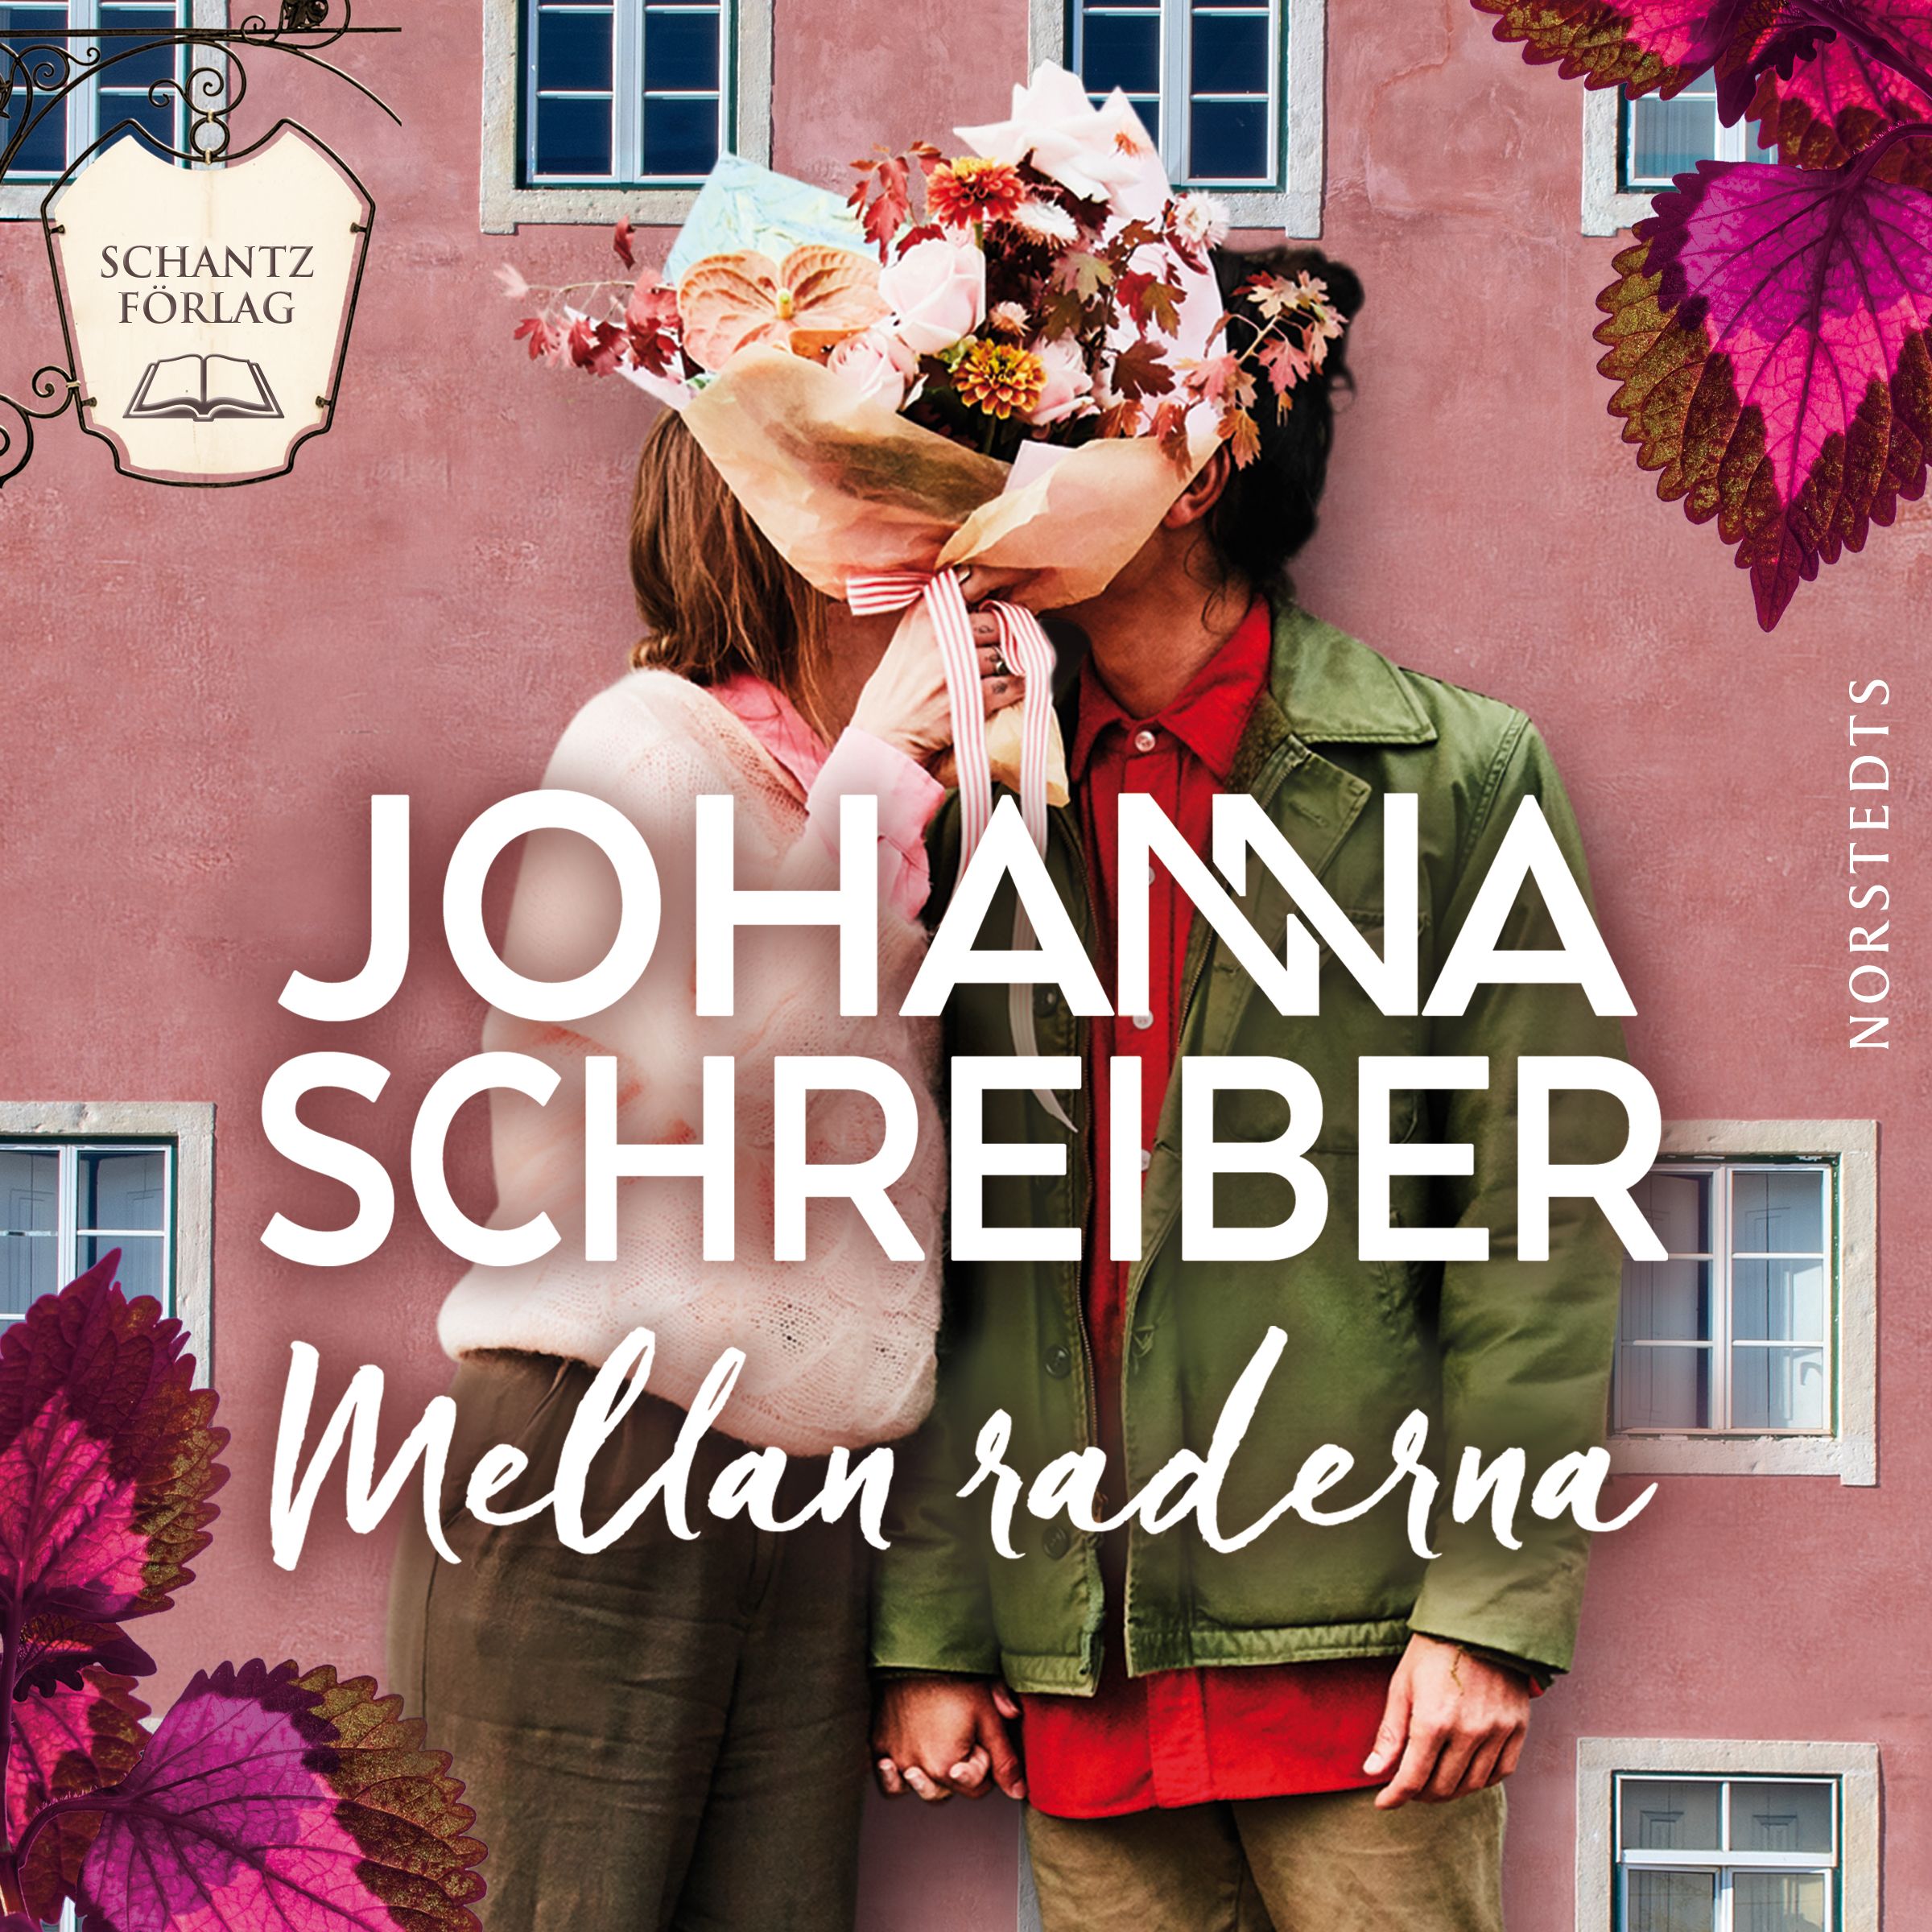 Mellan raderna, audiobook by Johanna Schreiber